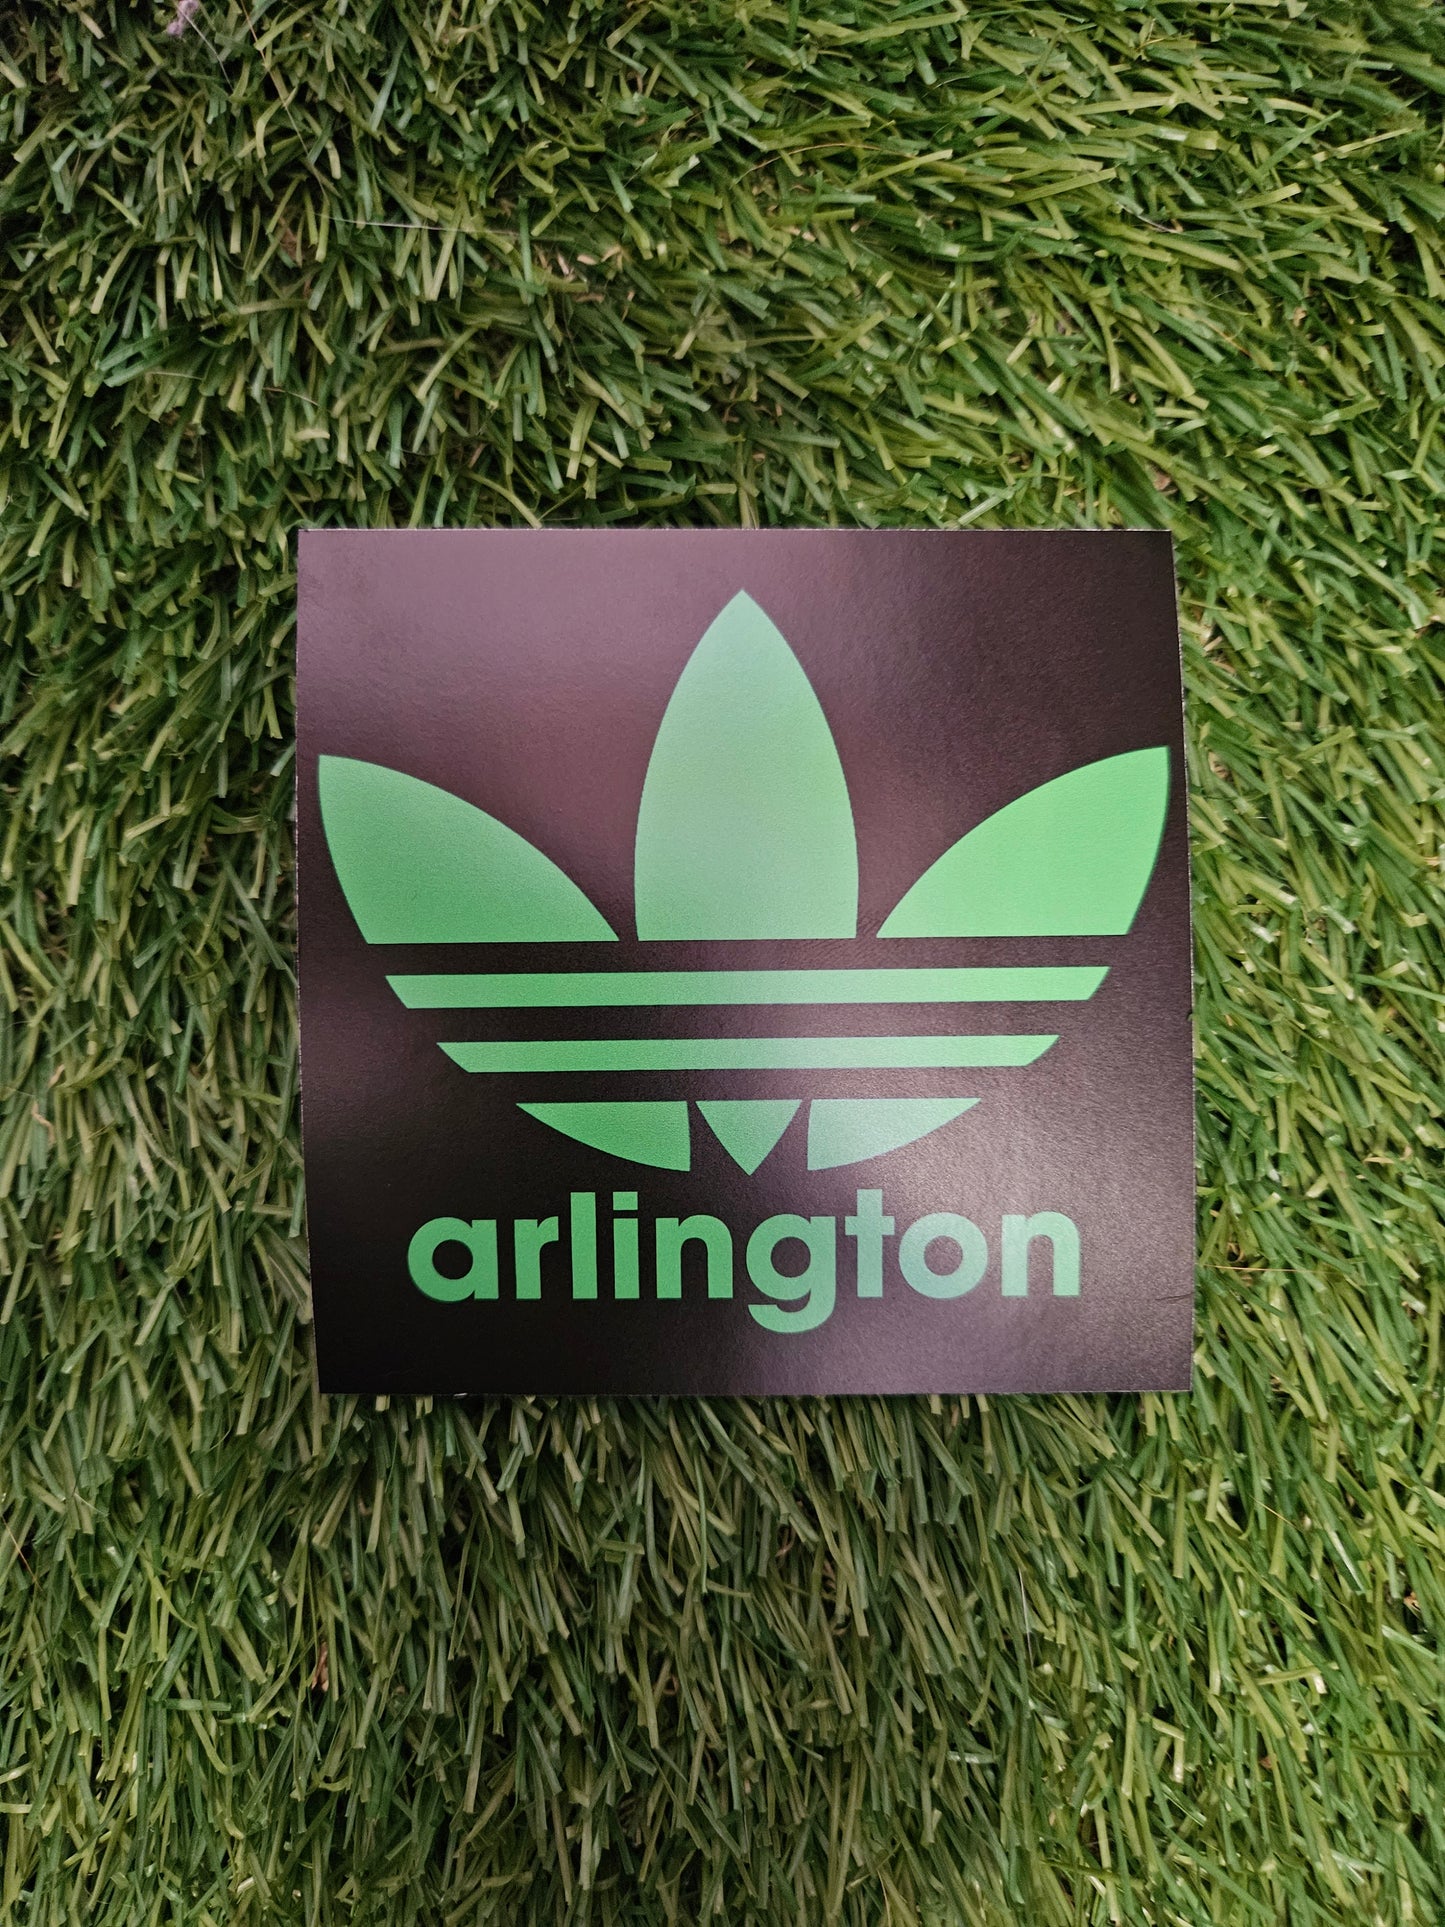 Arlington sticker